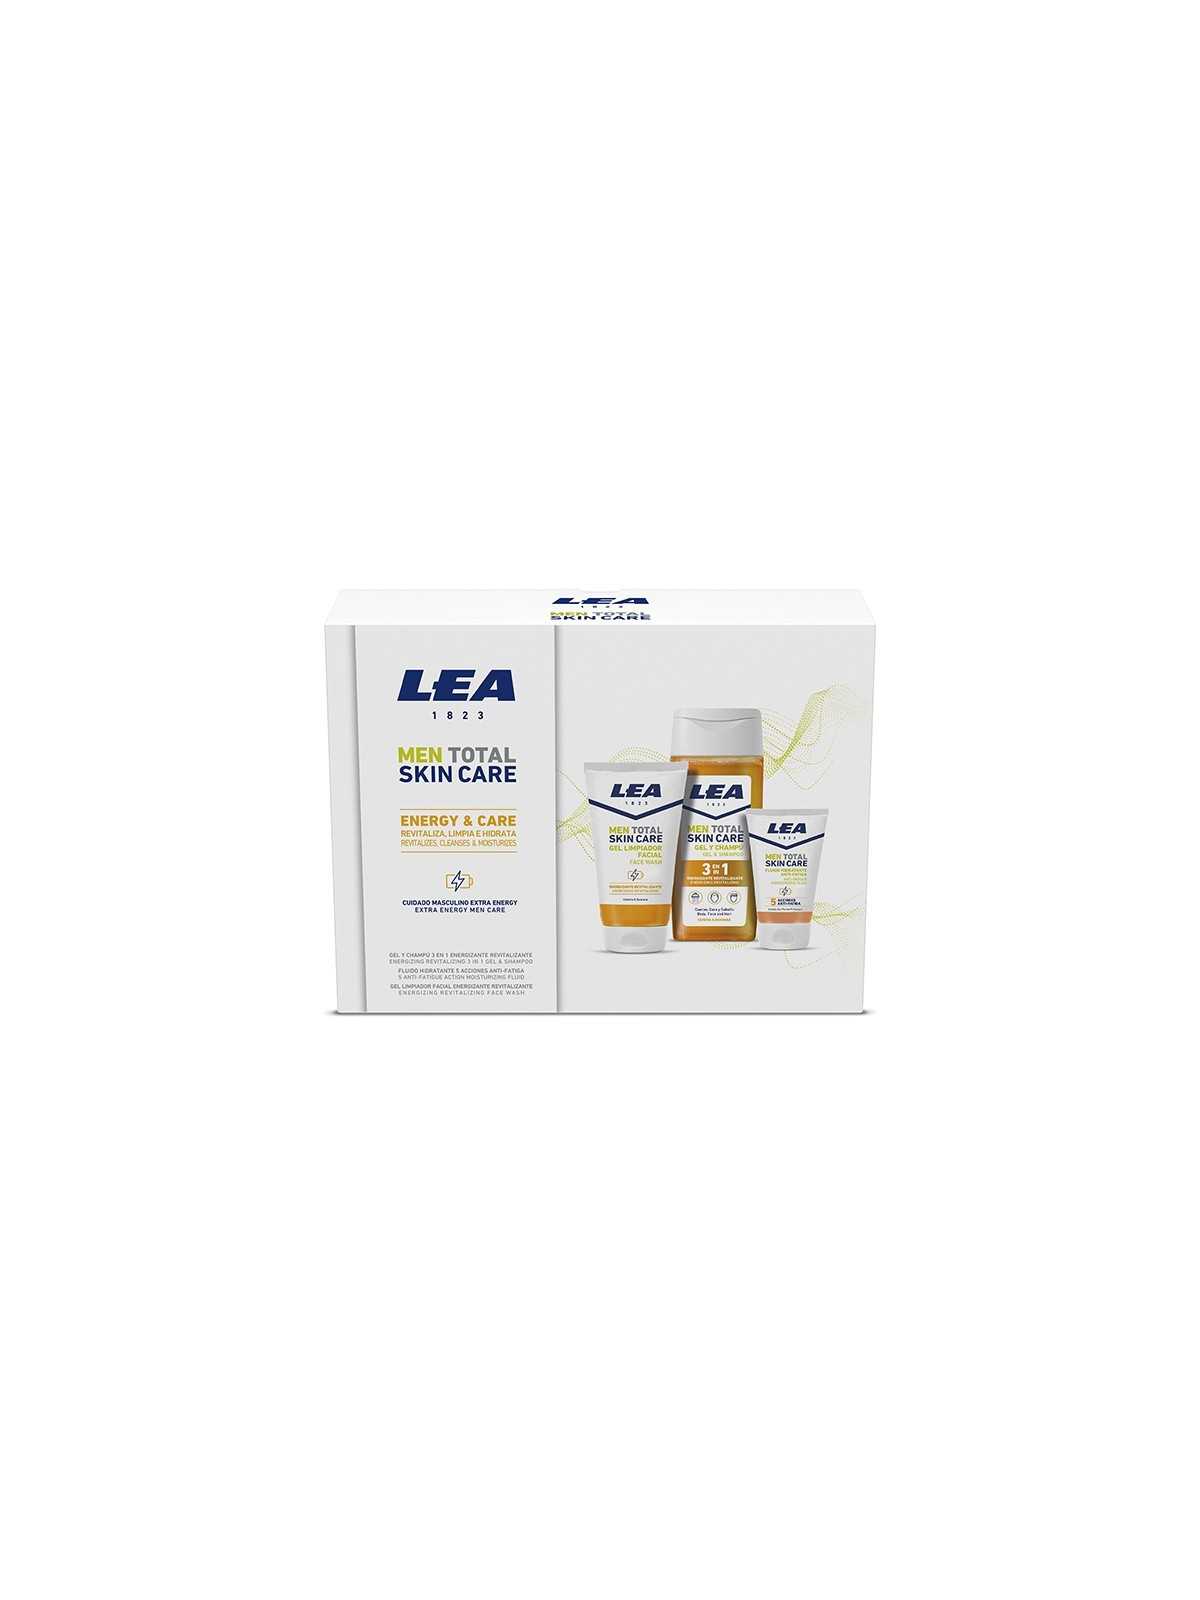 Regala Lea pack skin care Energy and Care con nuestra selección de Inicio por tan sólo 9,95 € o precio específico 9,95 € en Thalie Care